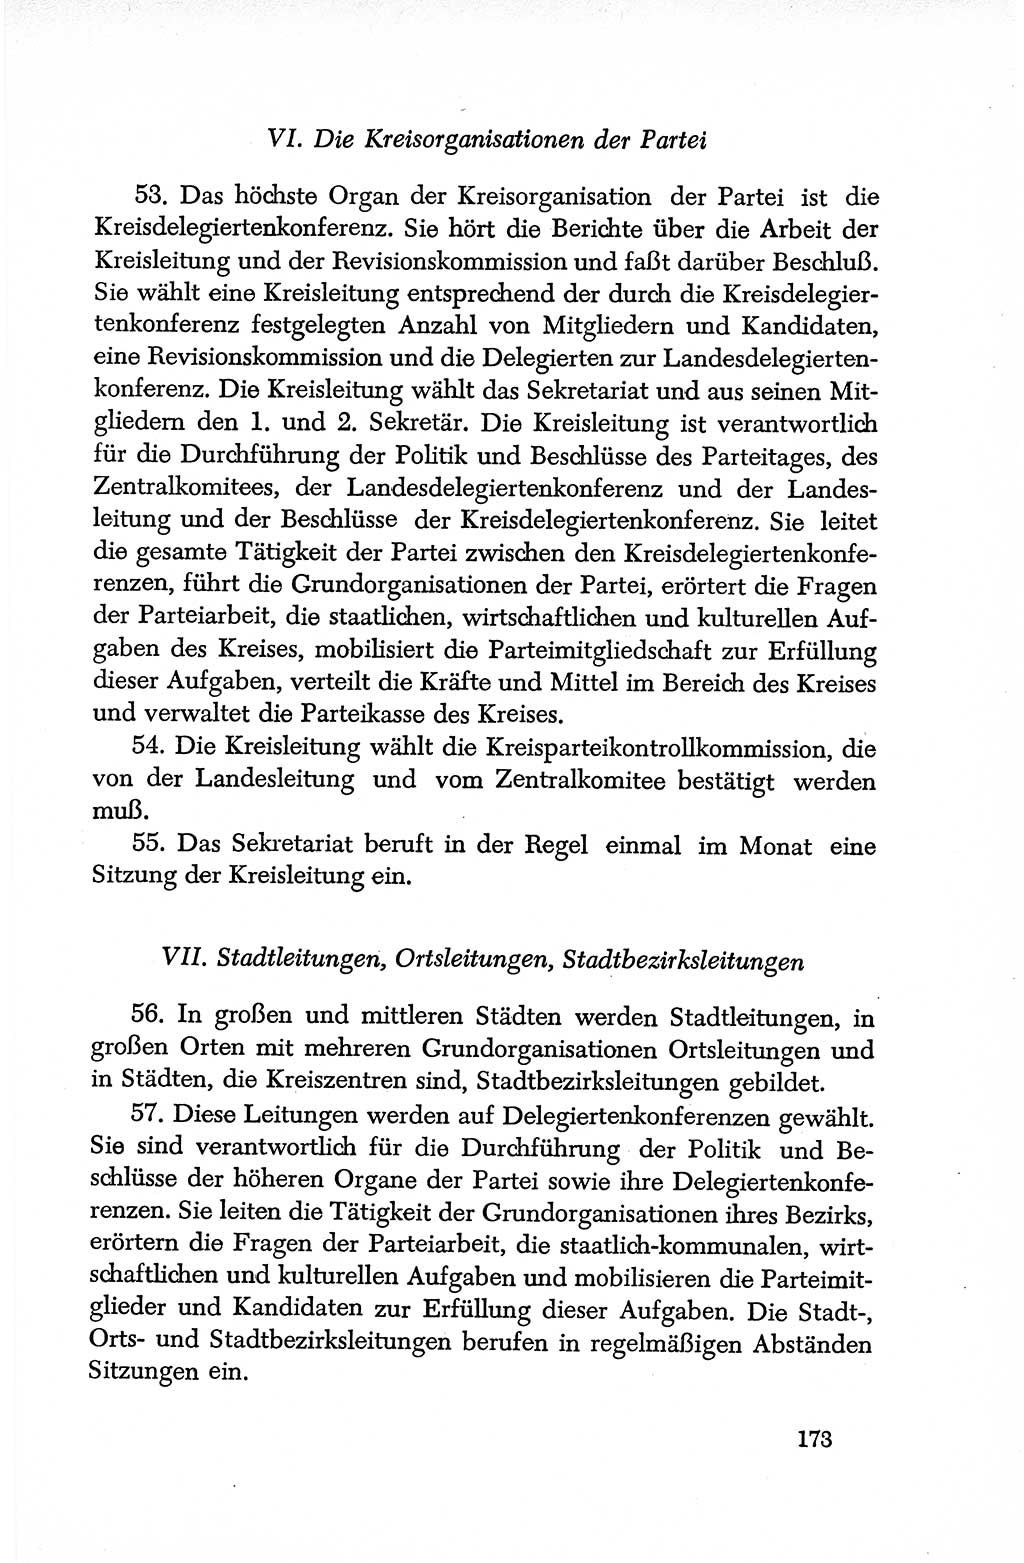 Dokumente der Sozialistischen Einheitspartei Deutschlands (SED) [Deutsche Demokratische Republik (DDR)] 1950-1952, Seite 173 (Dok. SED DDR 1950-1952, S. 173)